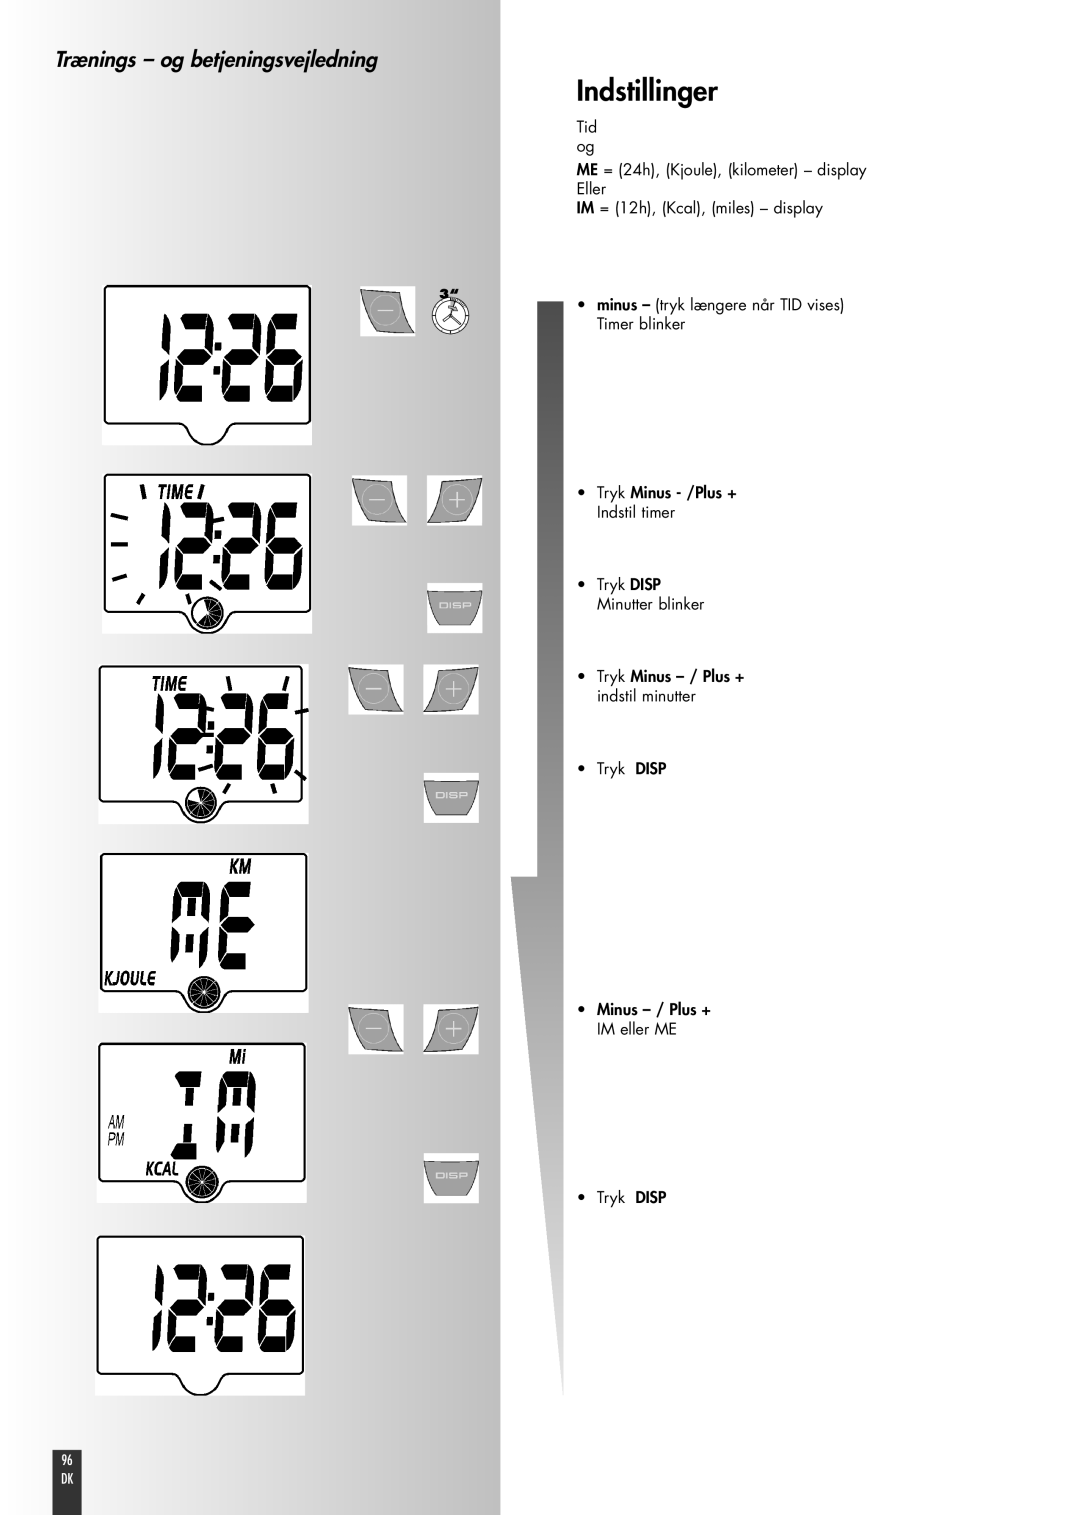 Kettler FB600 Indstillinger, Trænings - og betjeningsvejledning, Tid og ME = 24h, Kjoule, kilometer - display Eller, 96 DK 